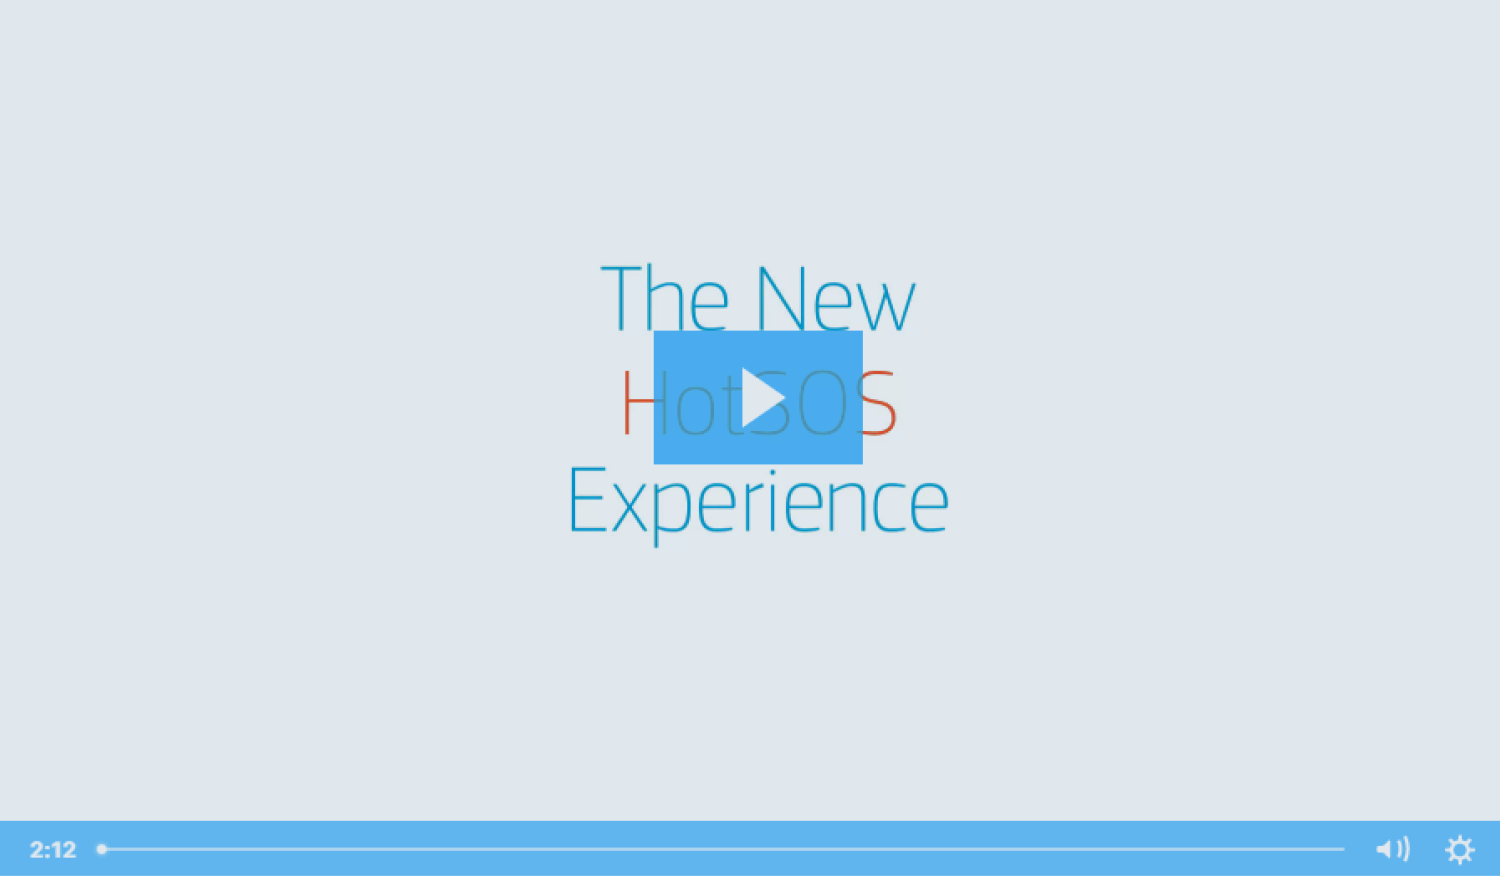 The New HotSOS Experience (11)